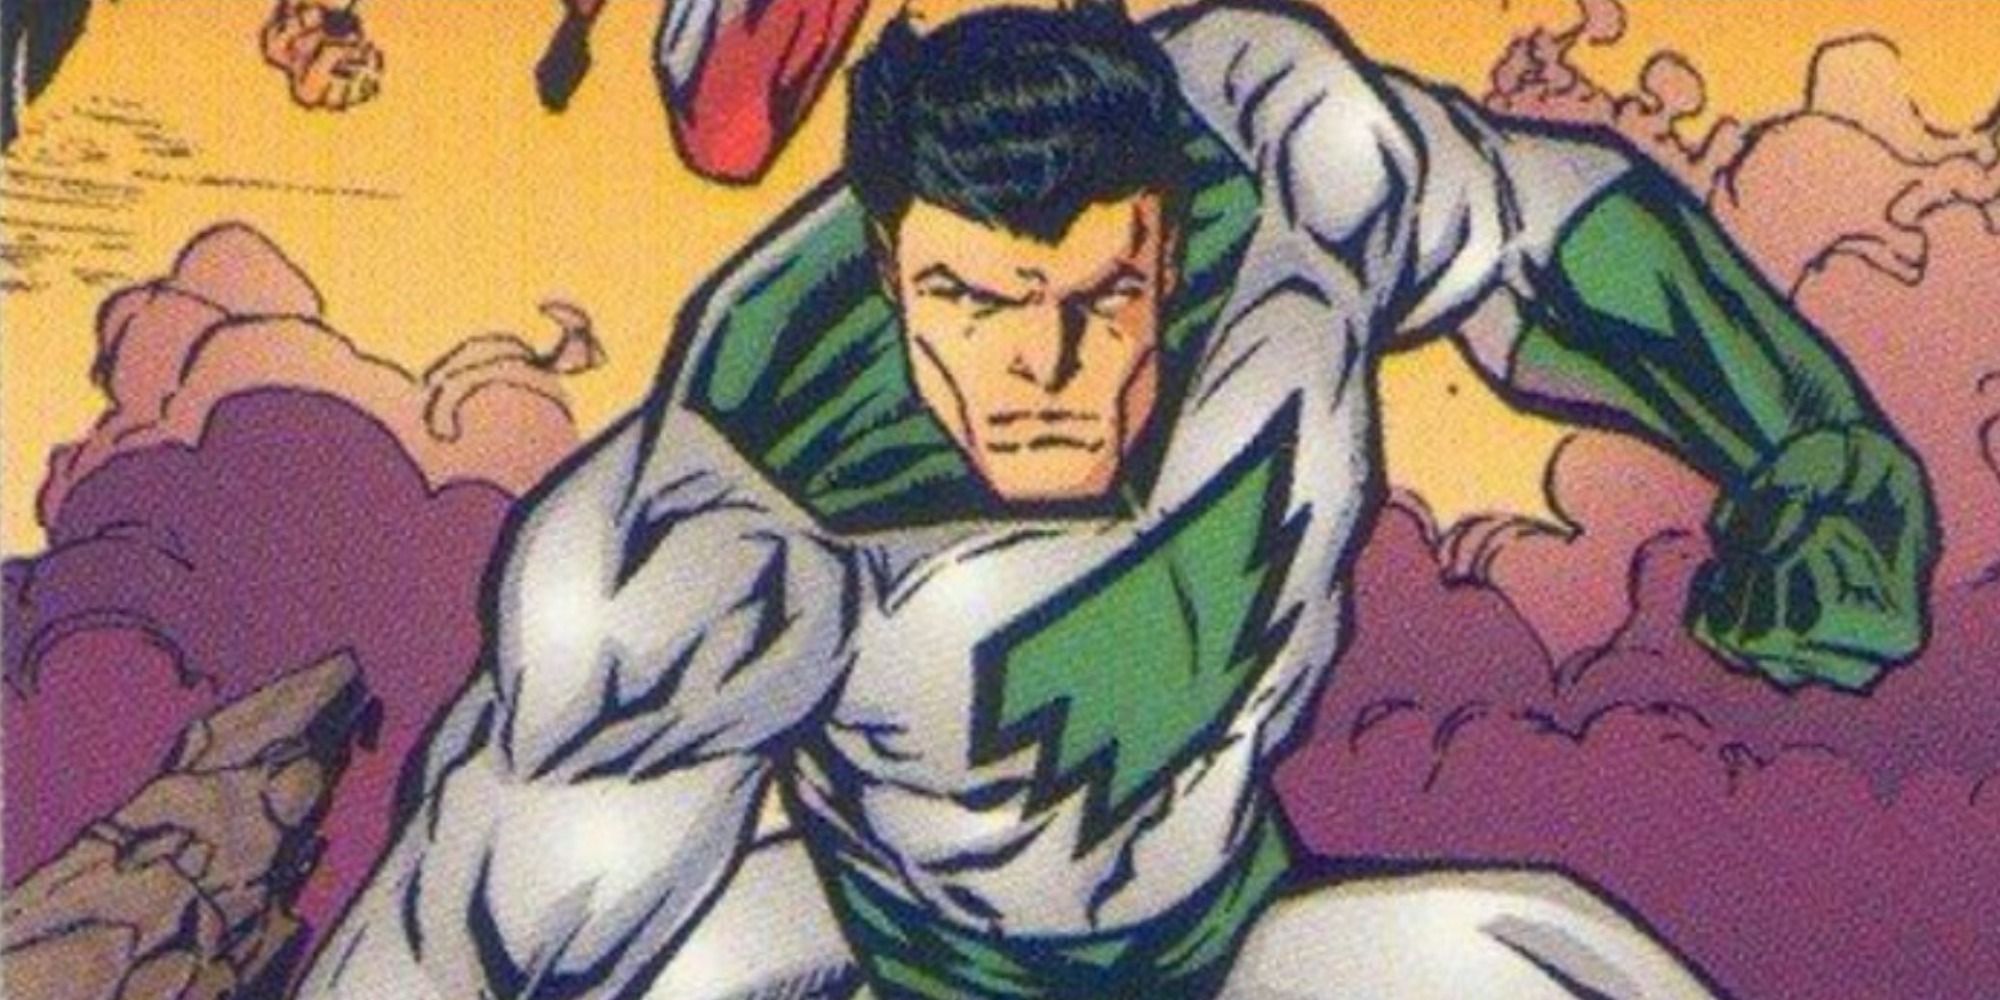 William Mar Vell uses his powers in Amalgam Comics.